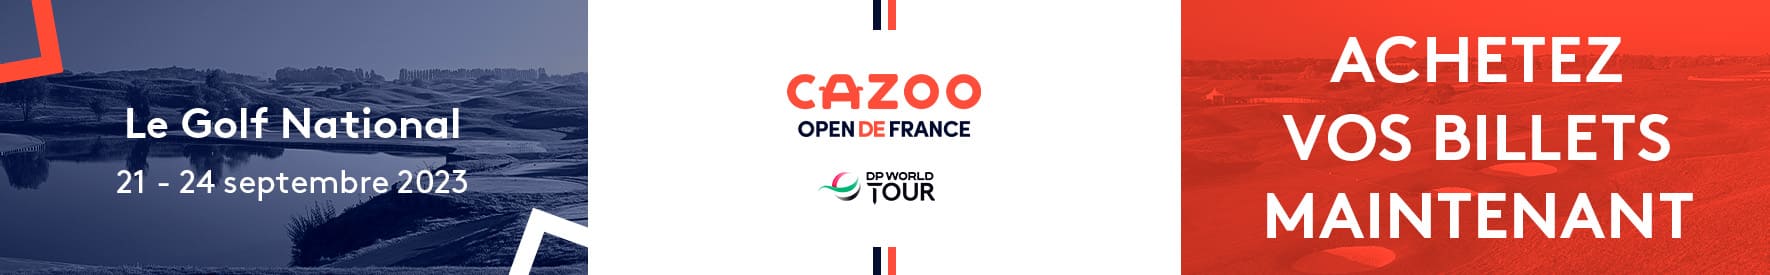 Cazoo c01 – 2023 – Open de France – Bannière large